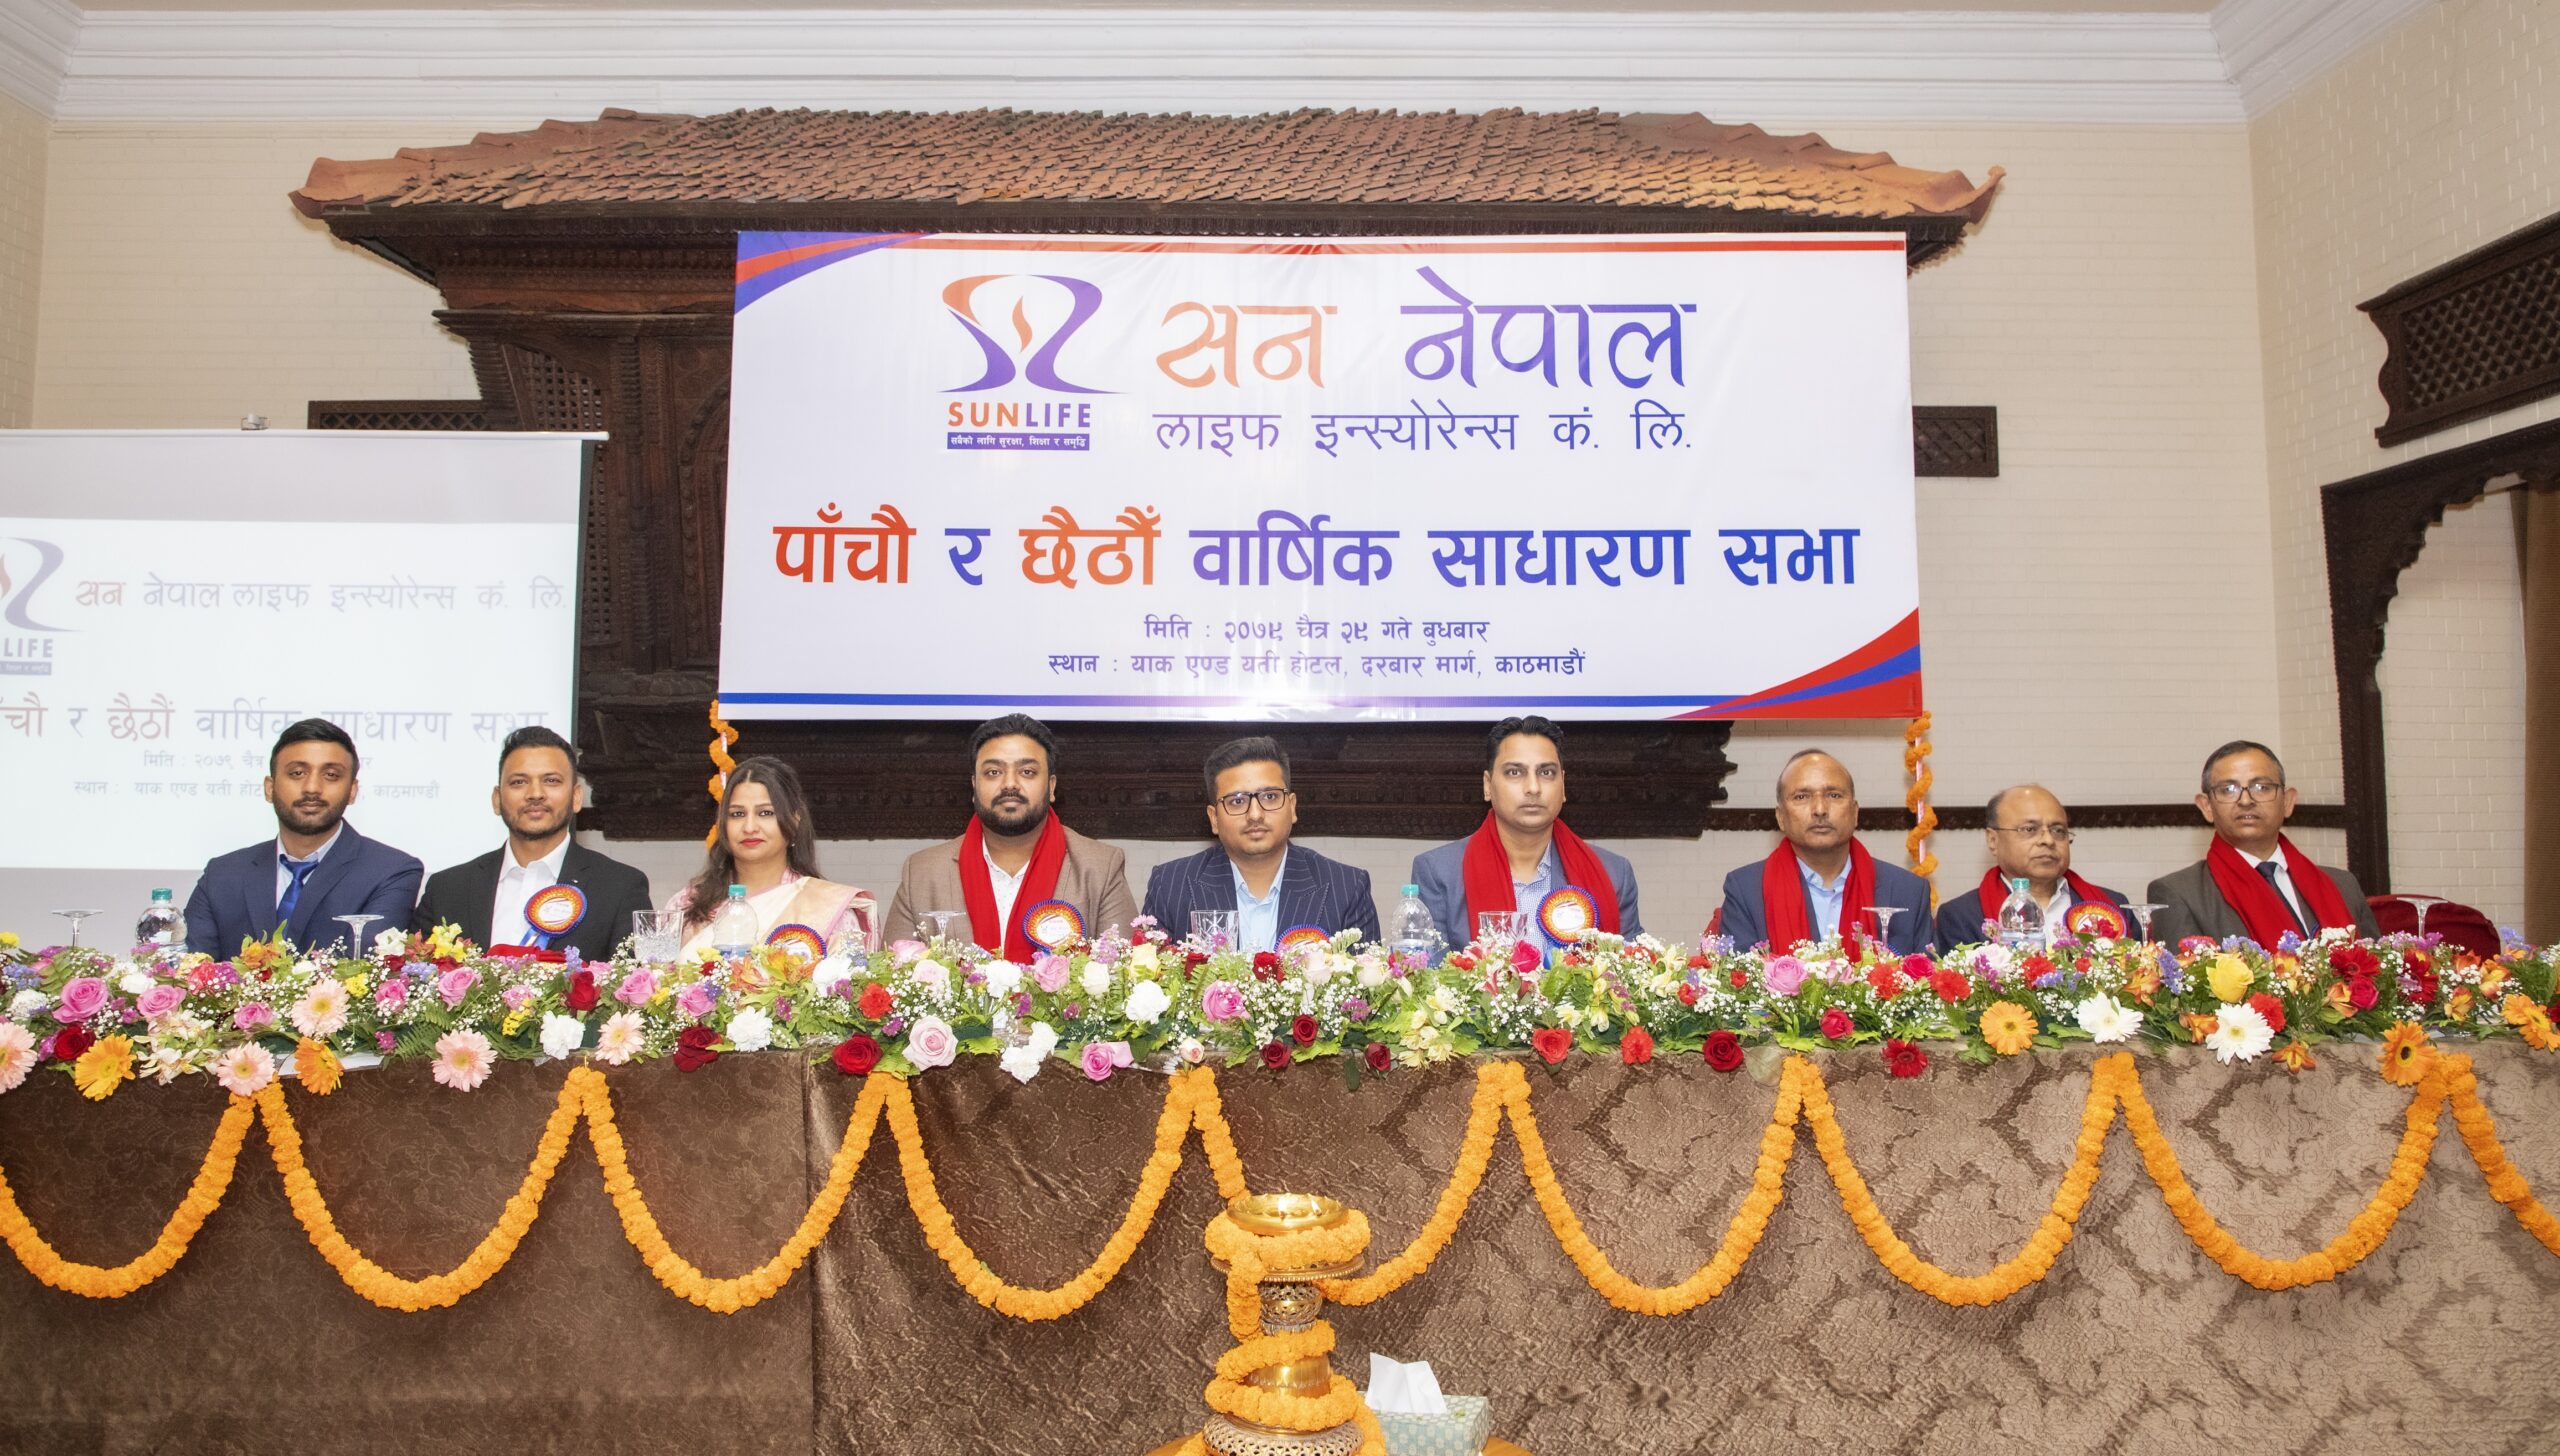 सन नेपाल लाइफको दुई आर्थिक वर्षको साधारण सभा सम्पन्न